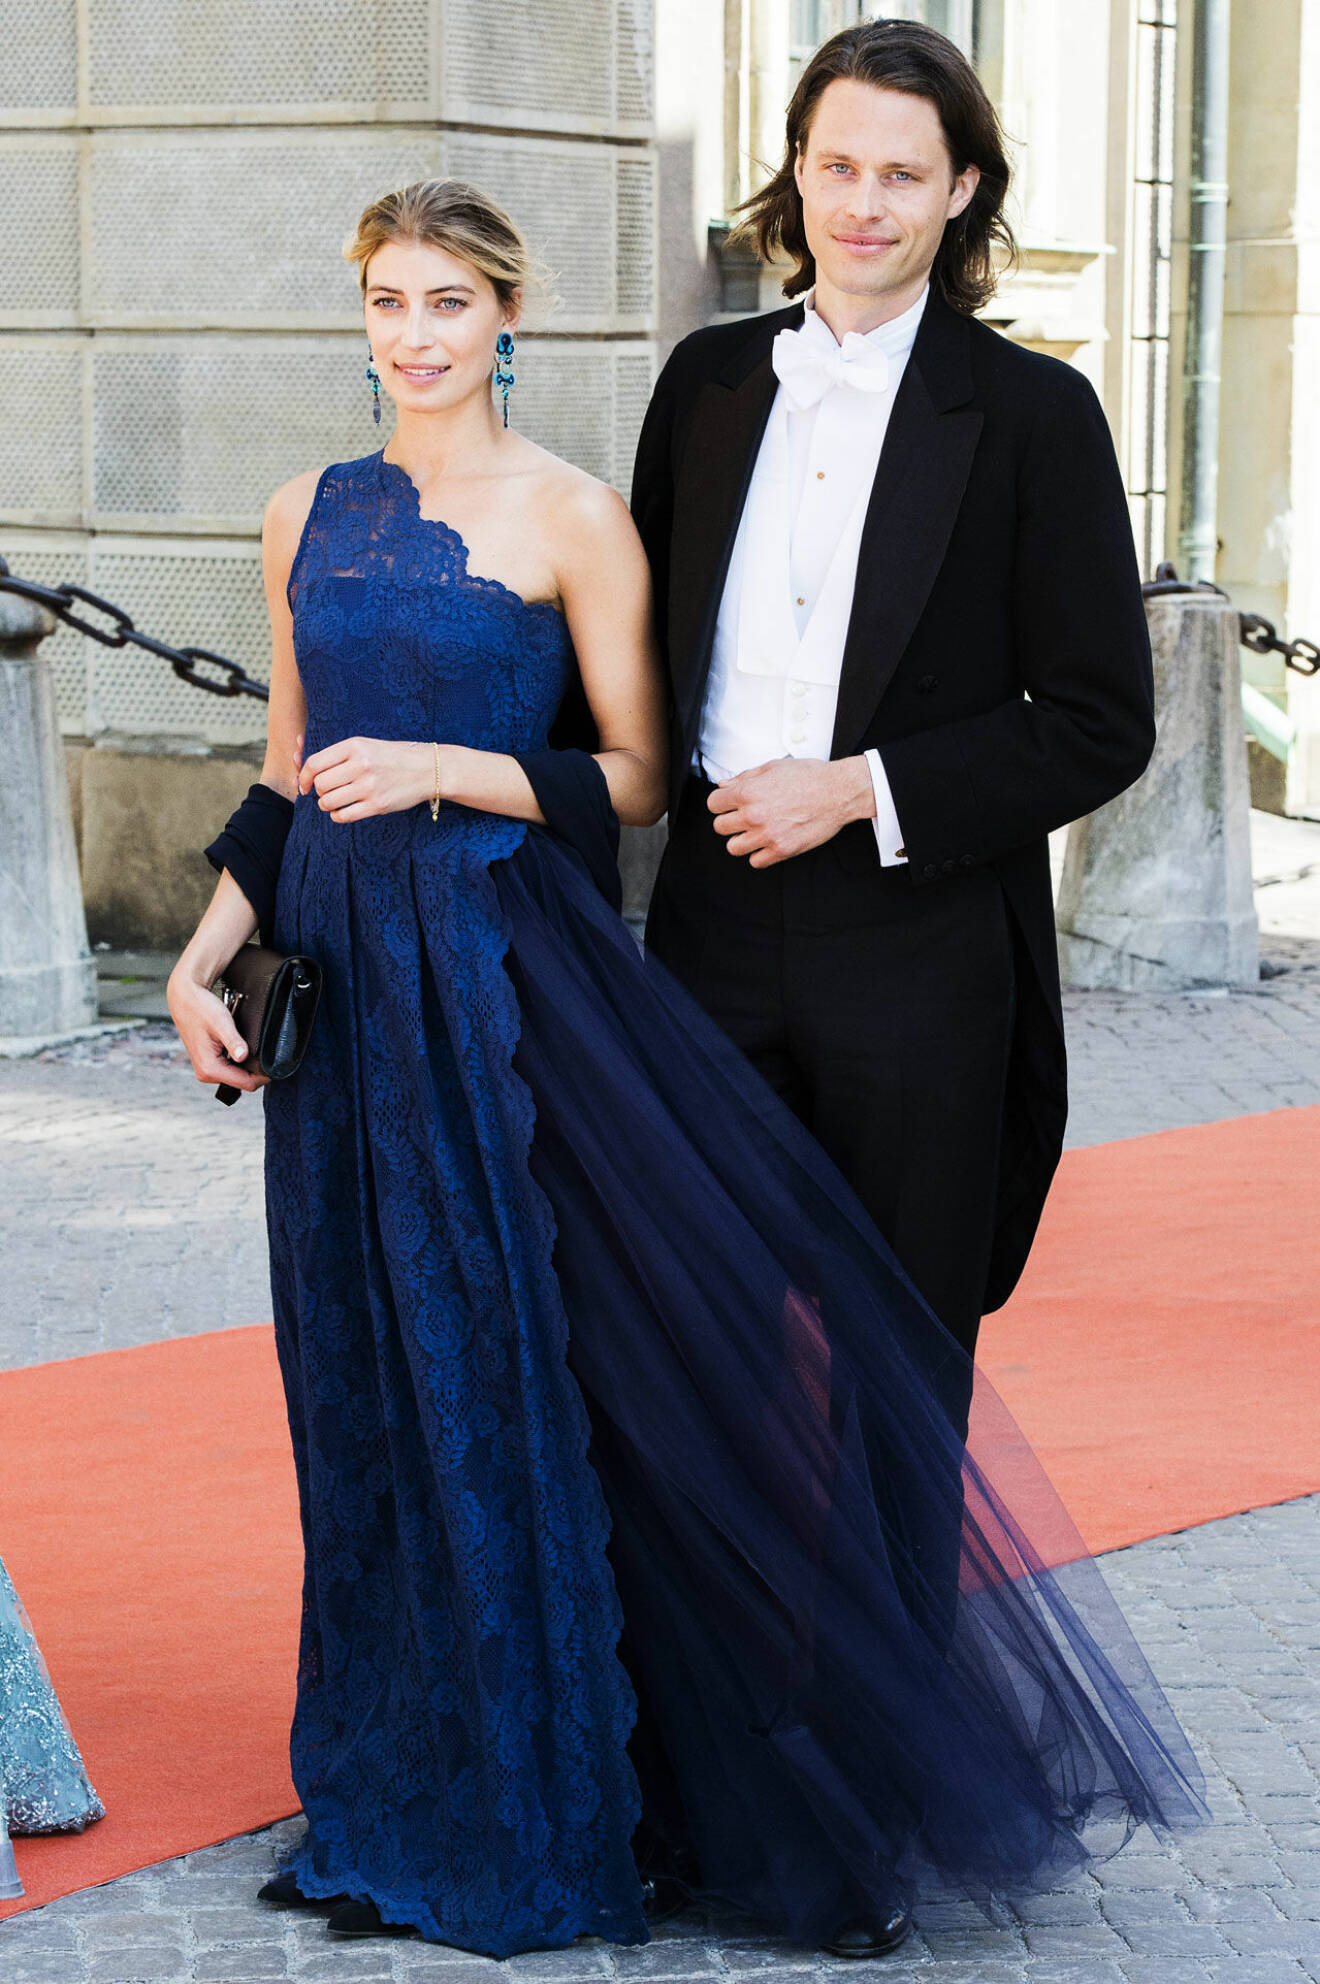 Här anländer Fredrik von der Esch och Cecilia Forss till prins Carl Philips bröllop.